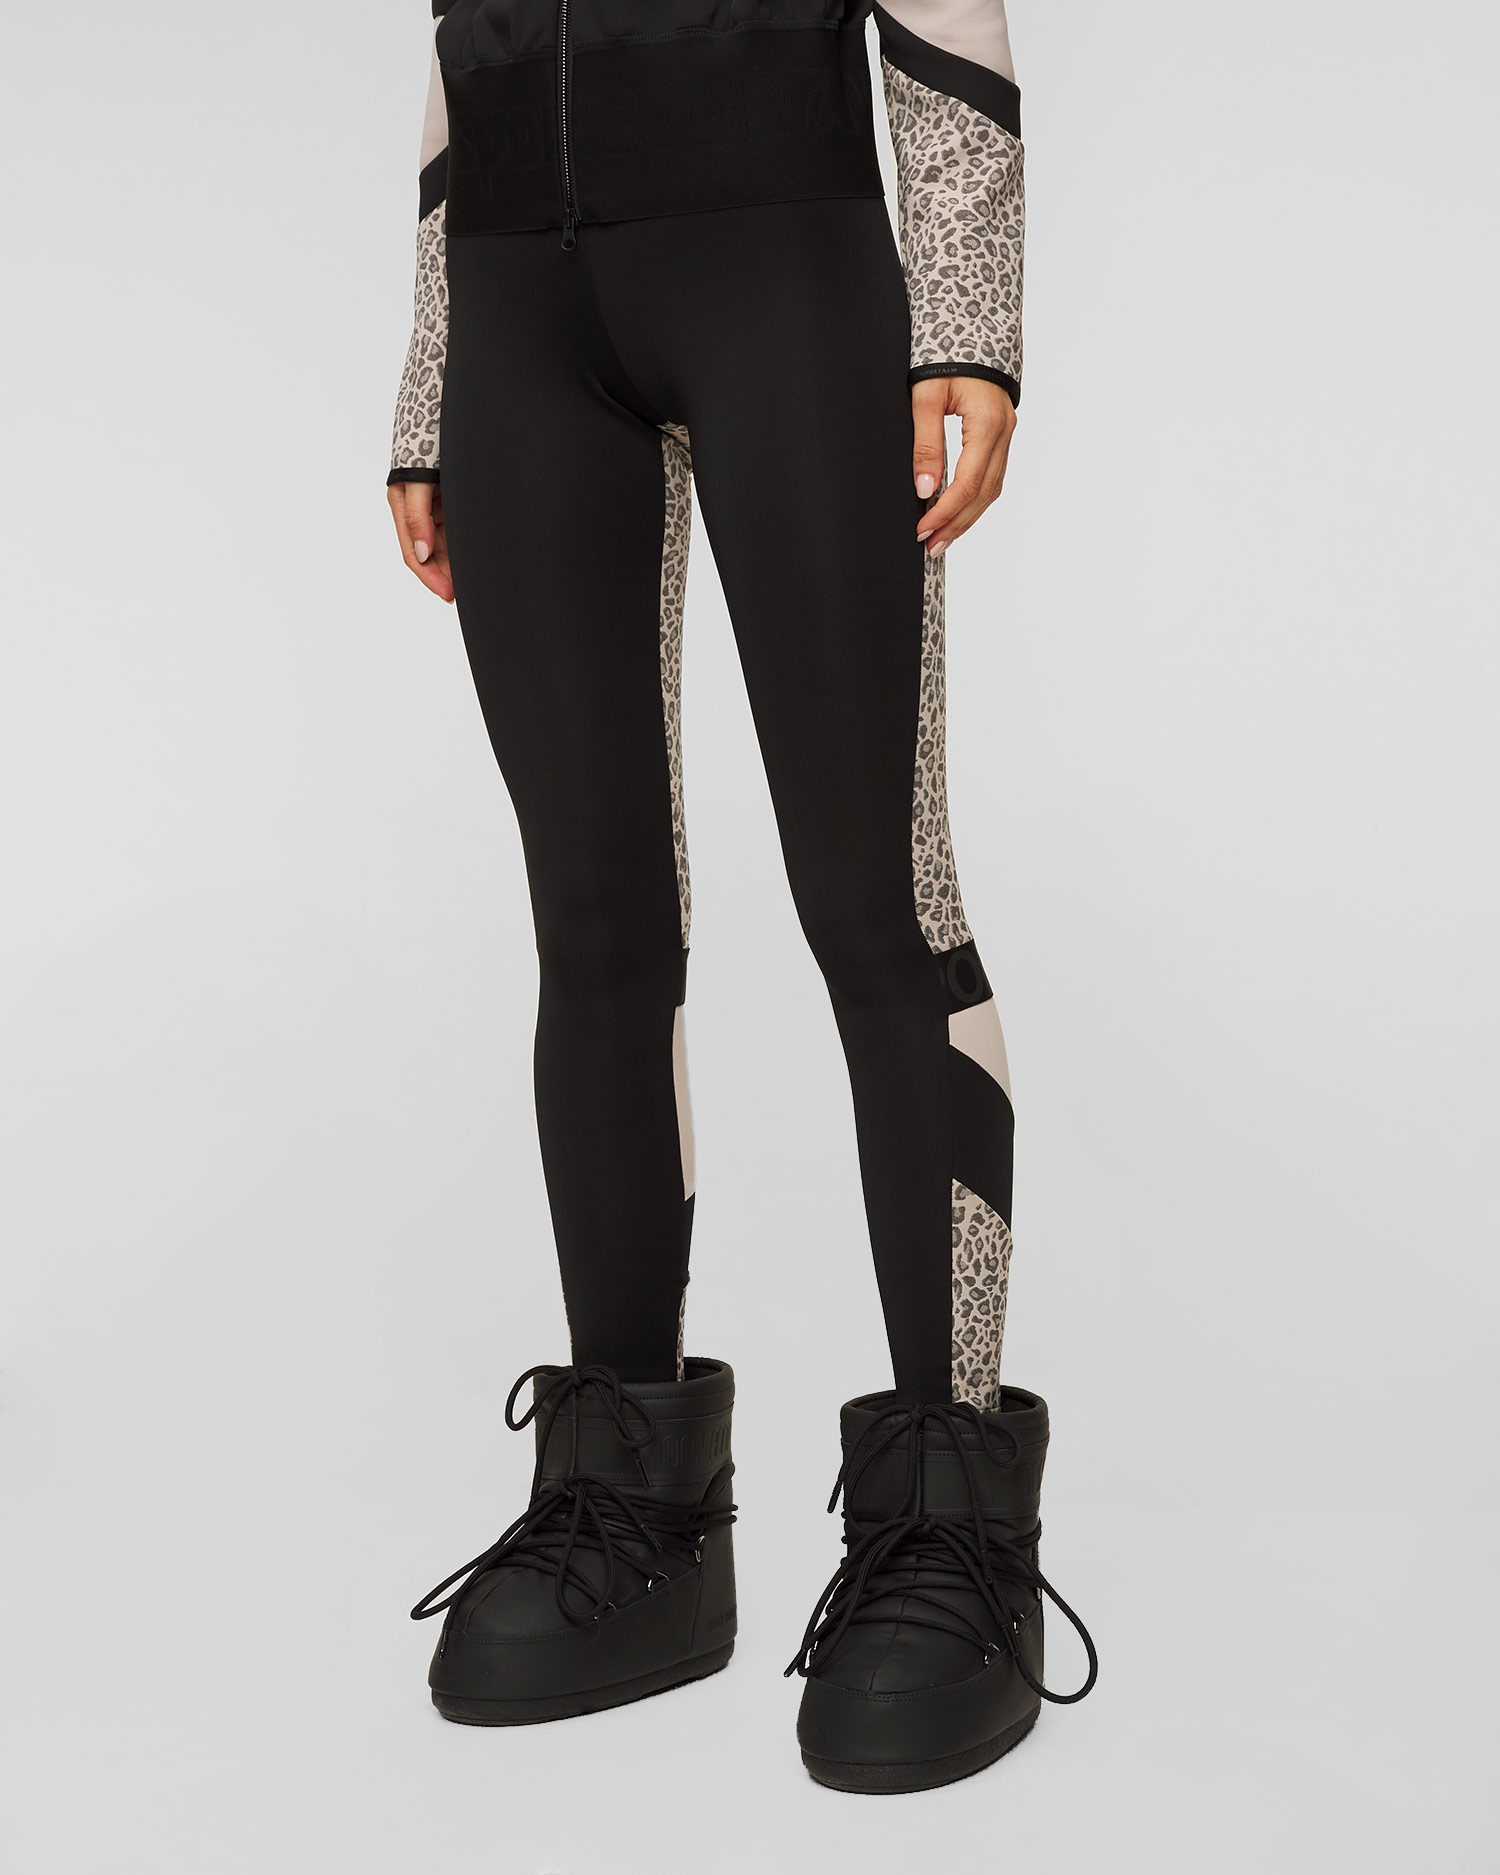 Women's leopard-print leggings Sportalm 1626509009-14